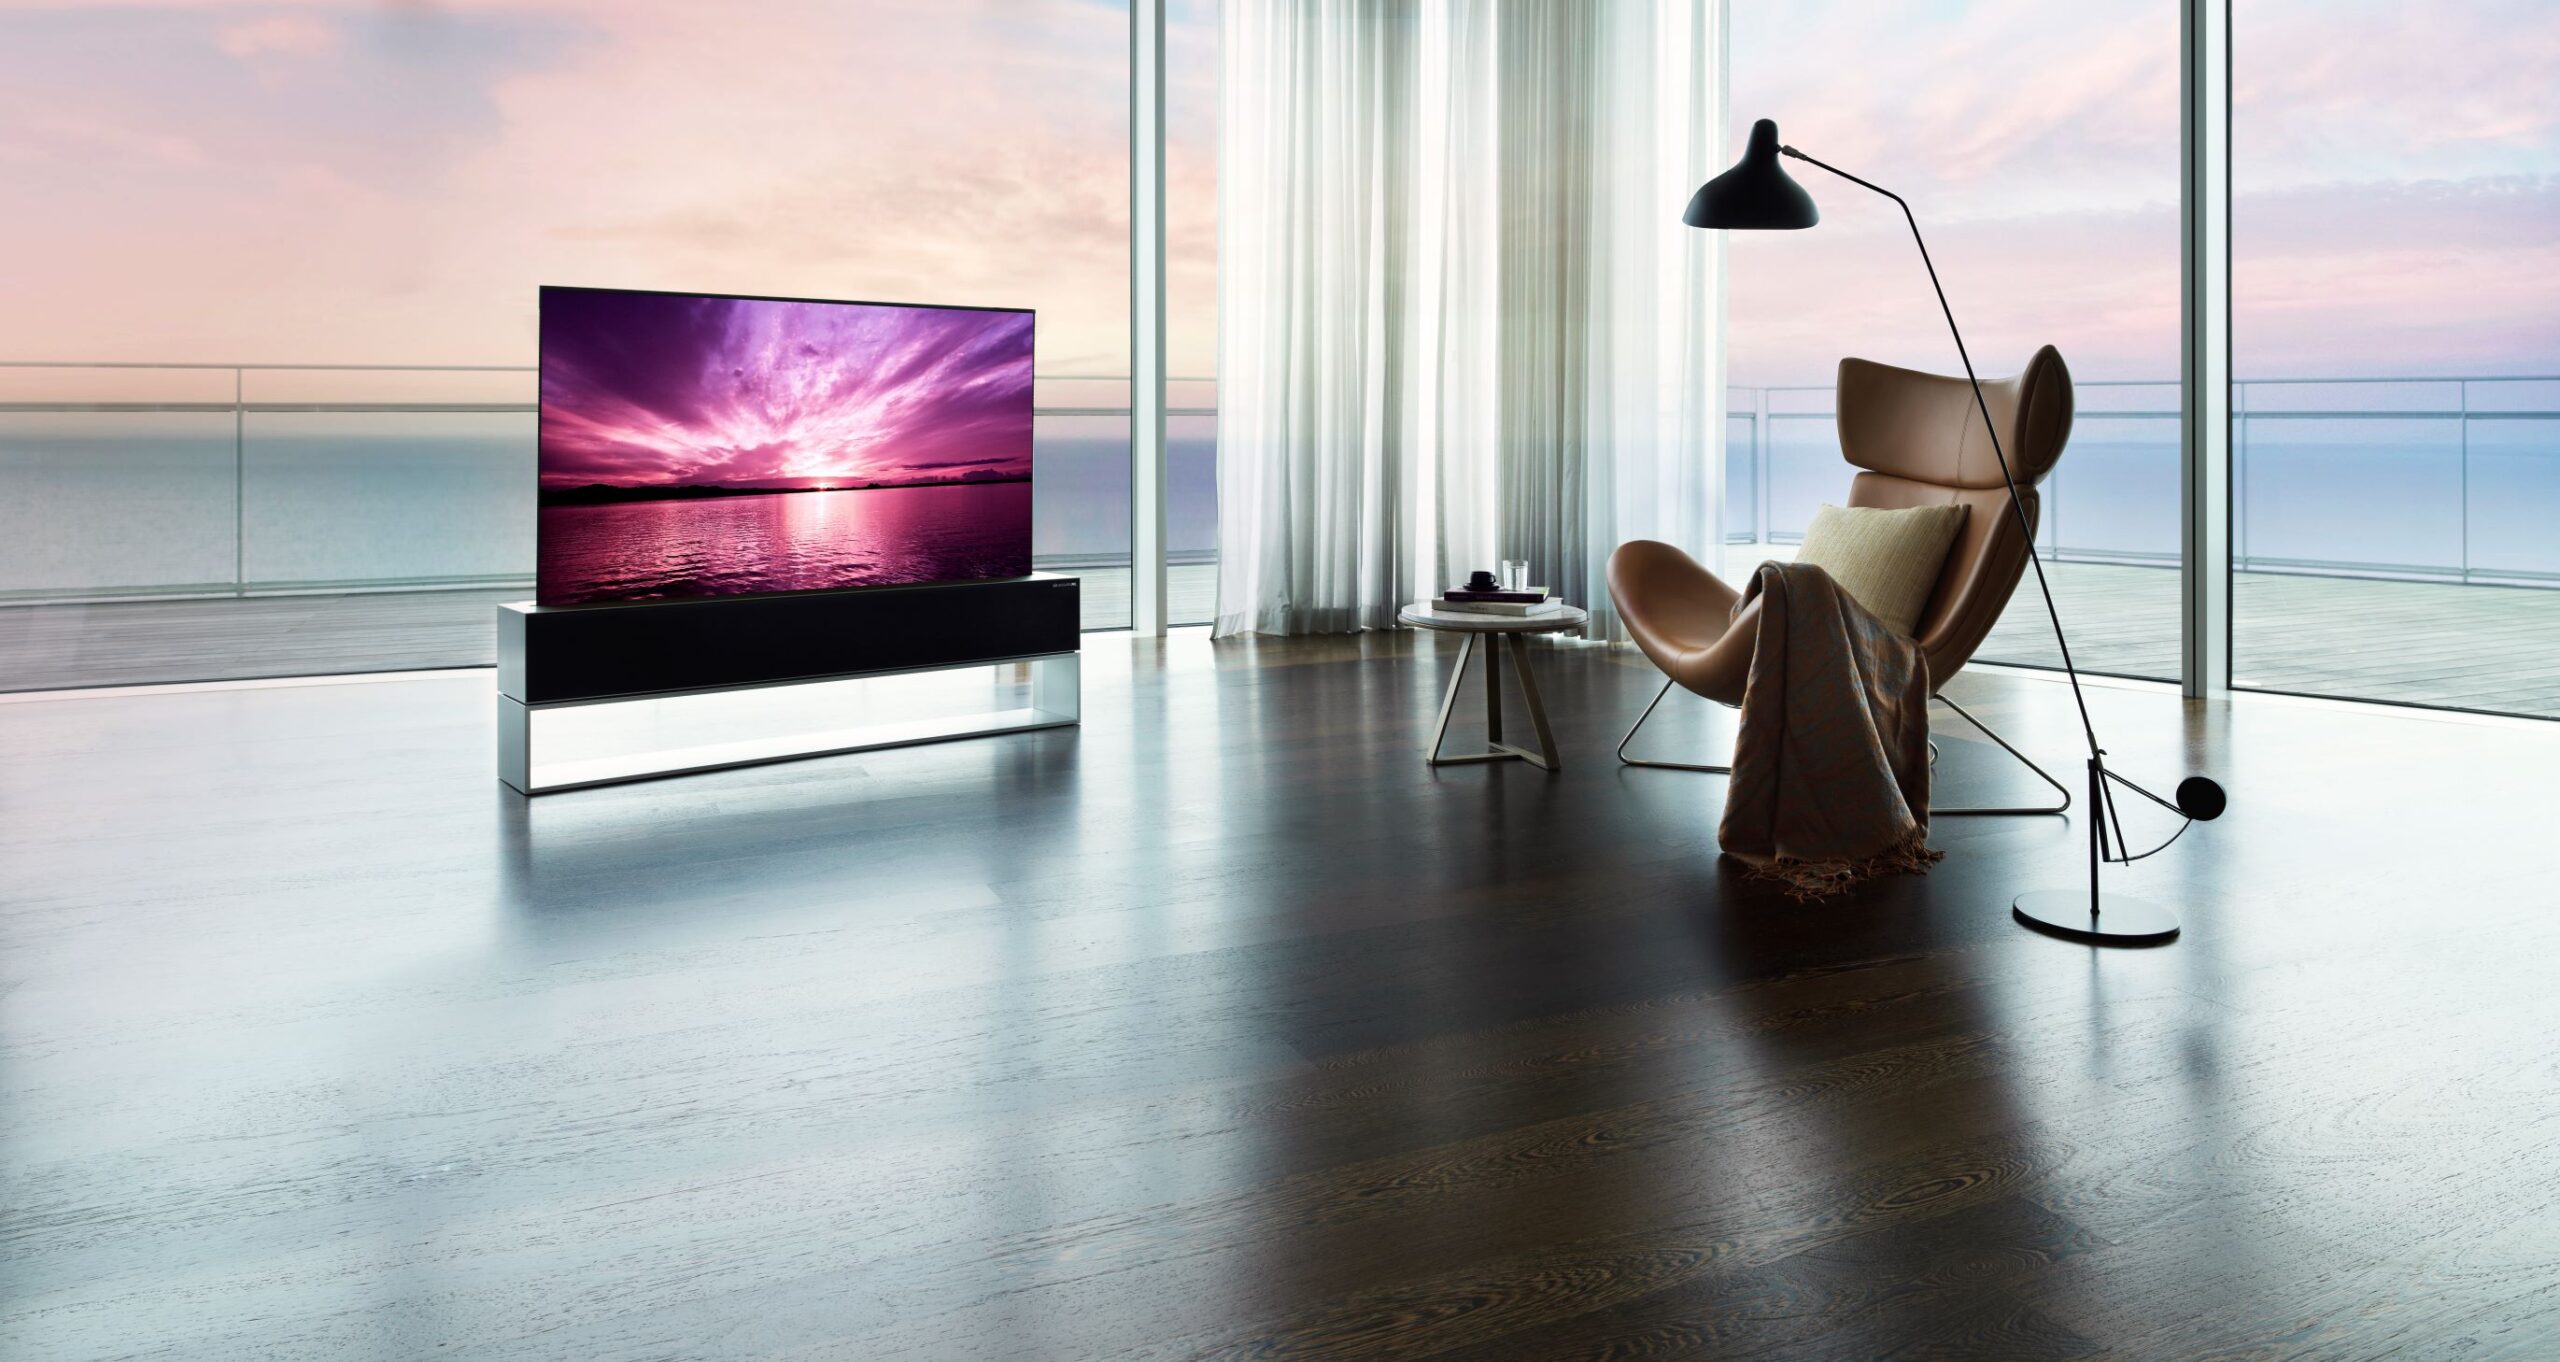 La TV enroulable LG est dispo à la vente en Corée du Sud... à un prix dissuasif